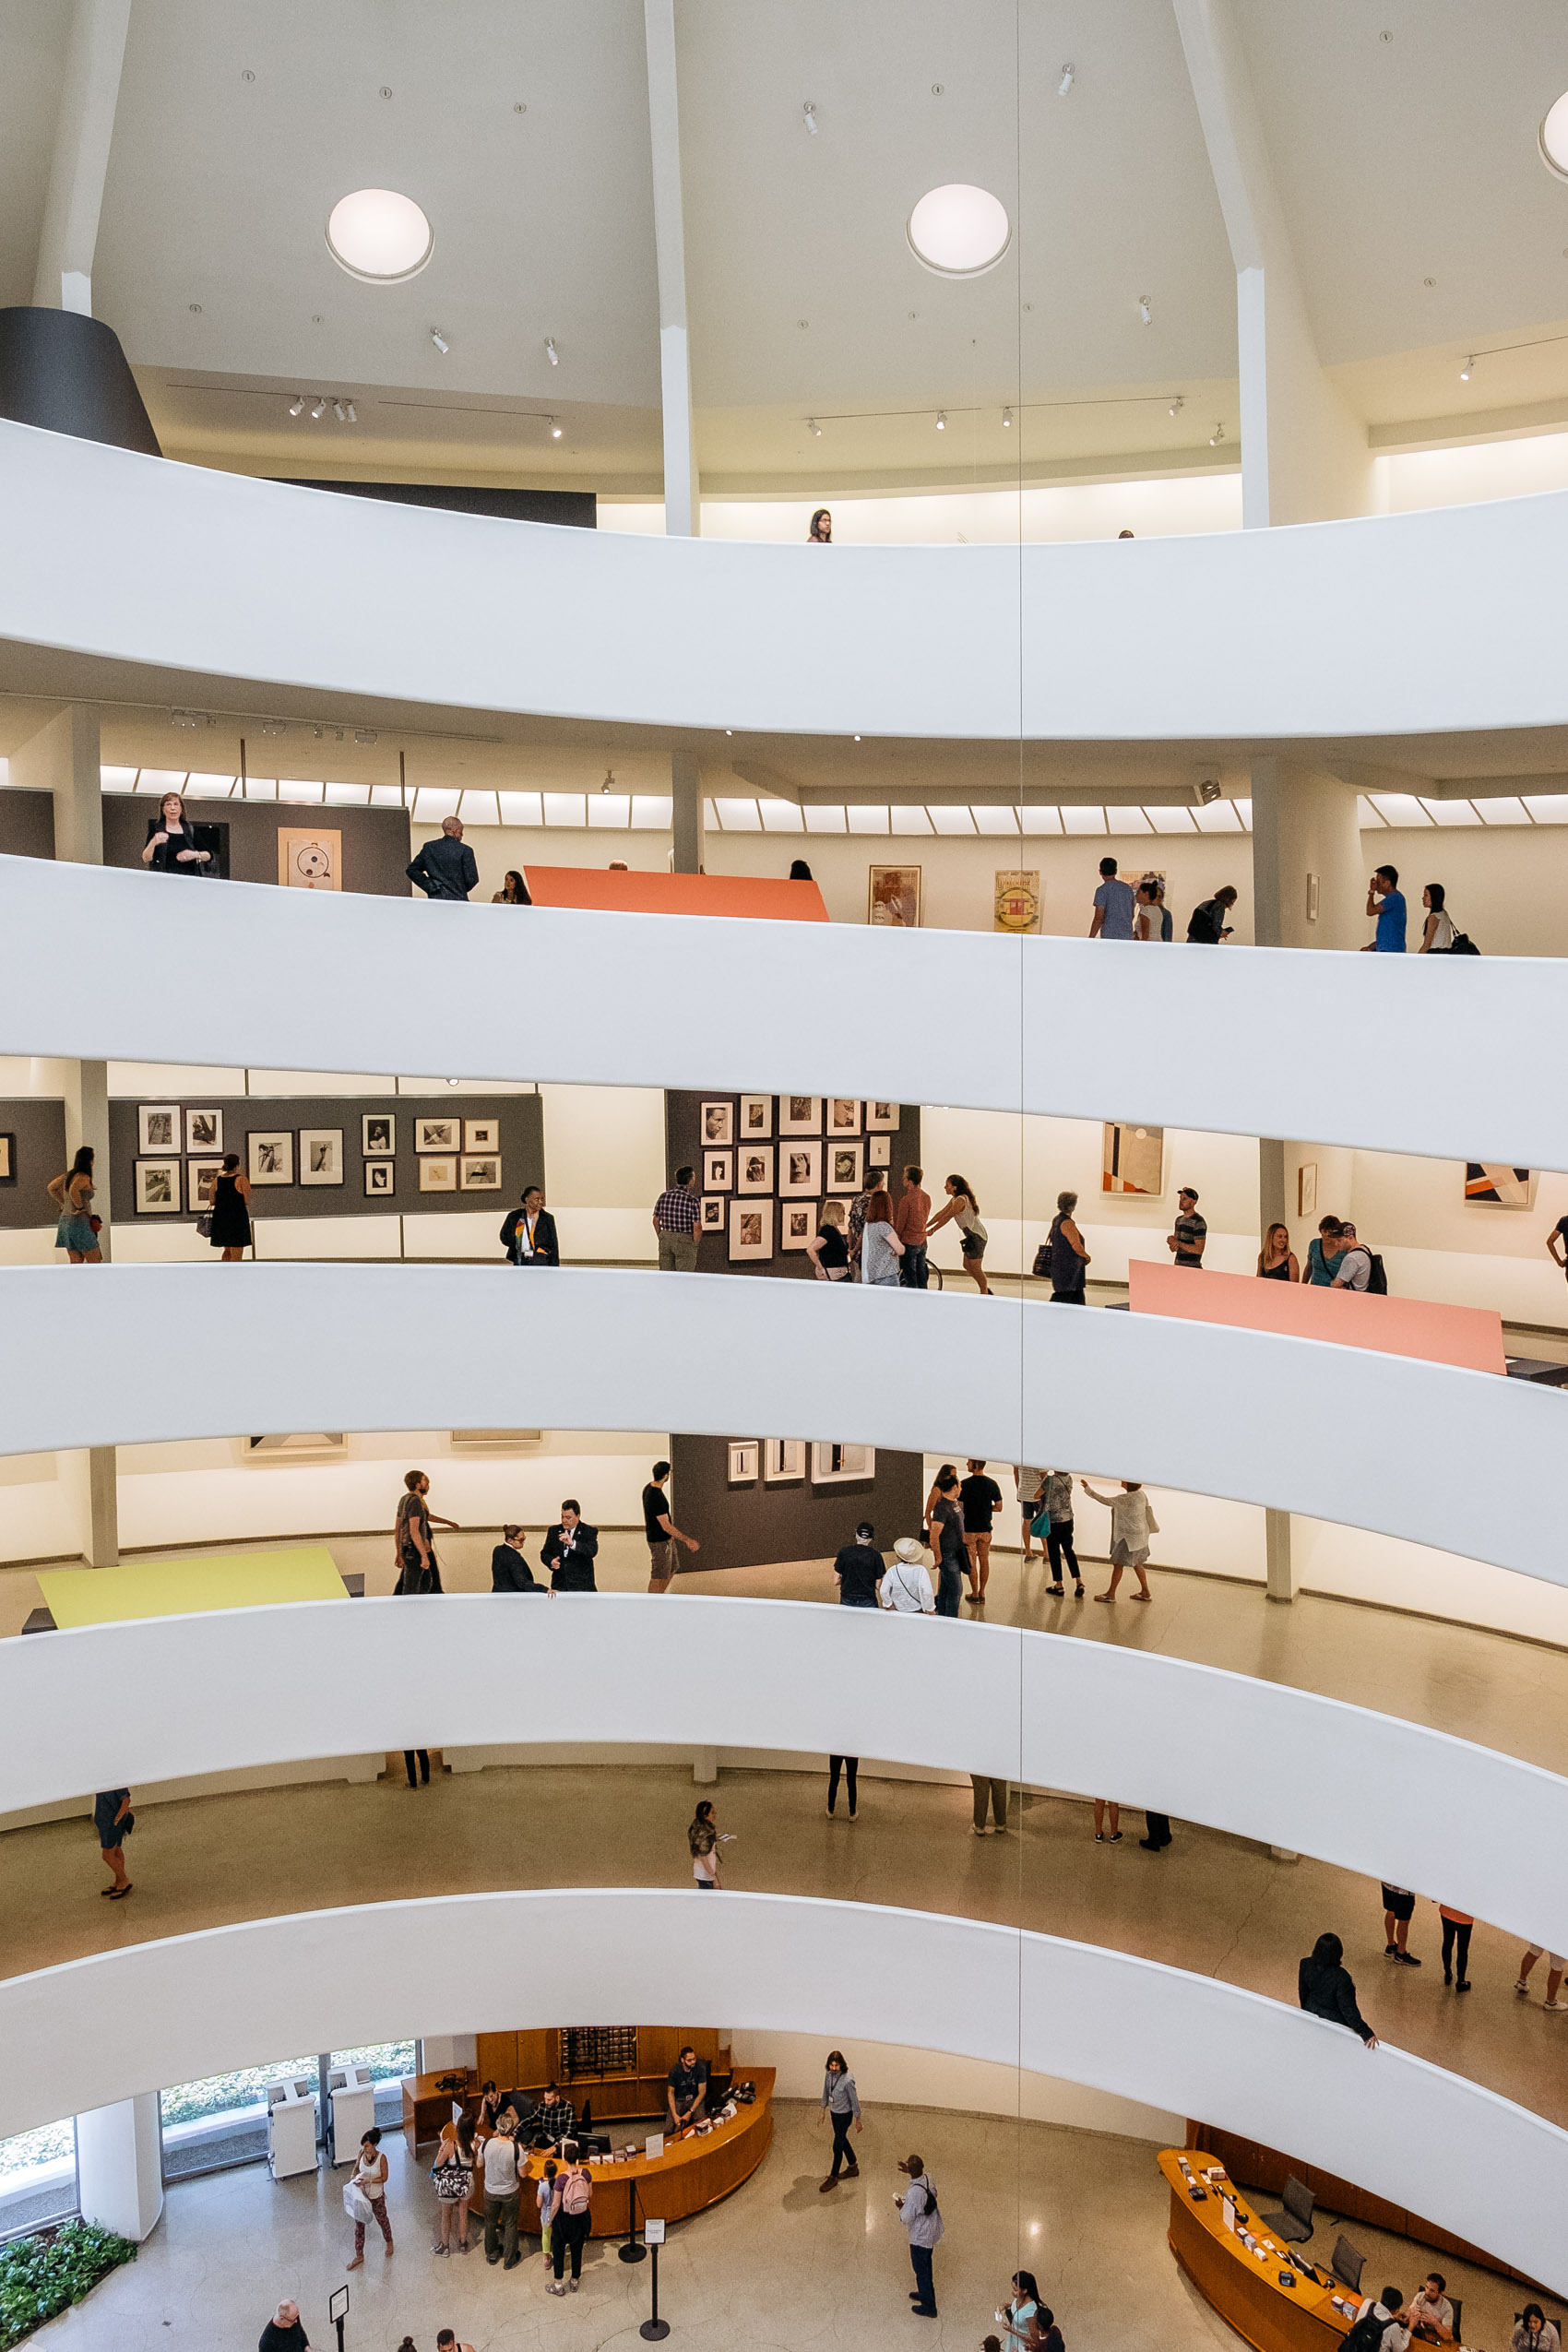 The Guggenheim Museum interior in New York